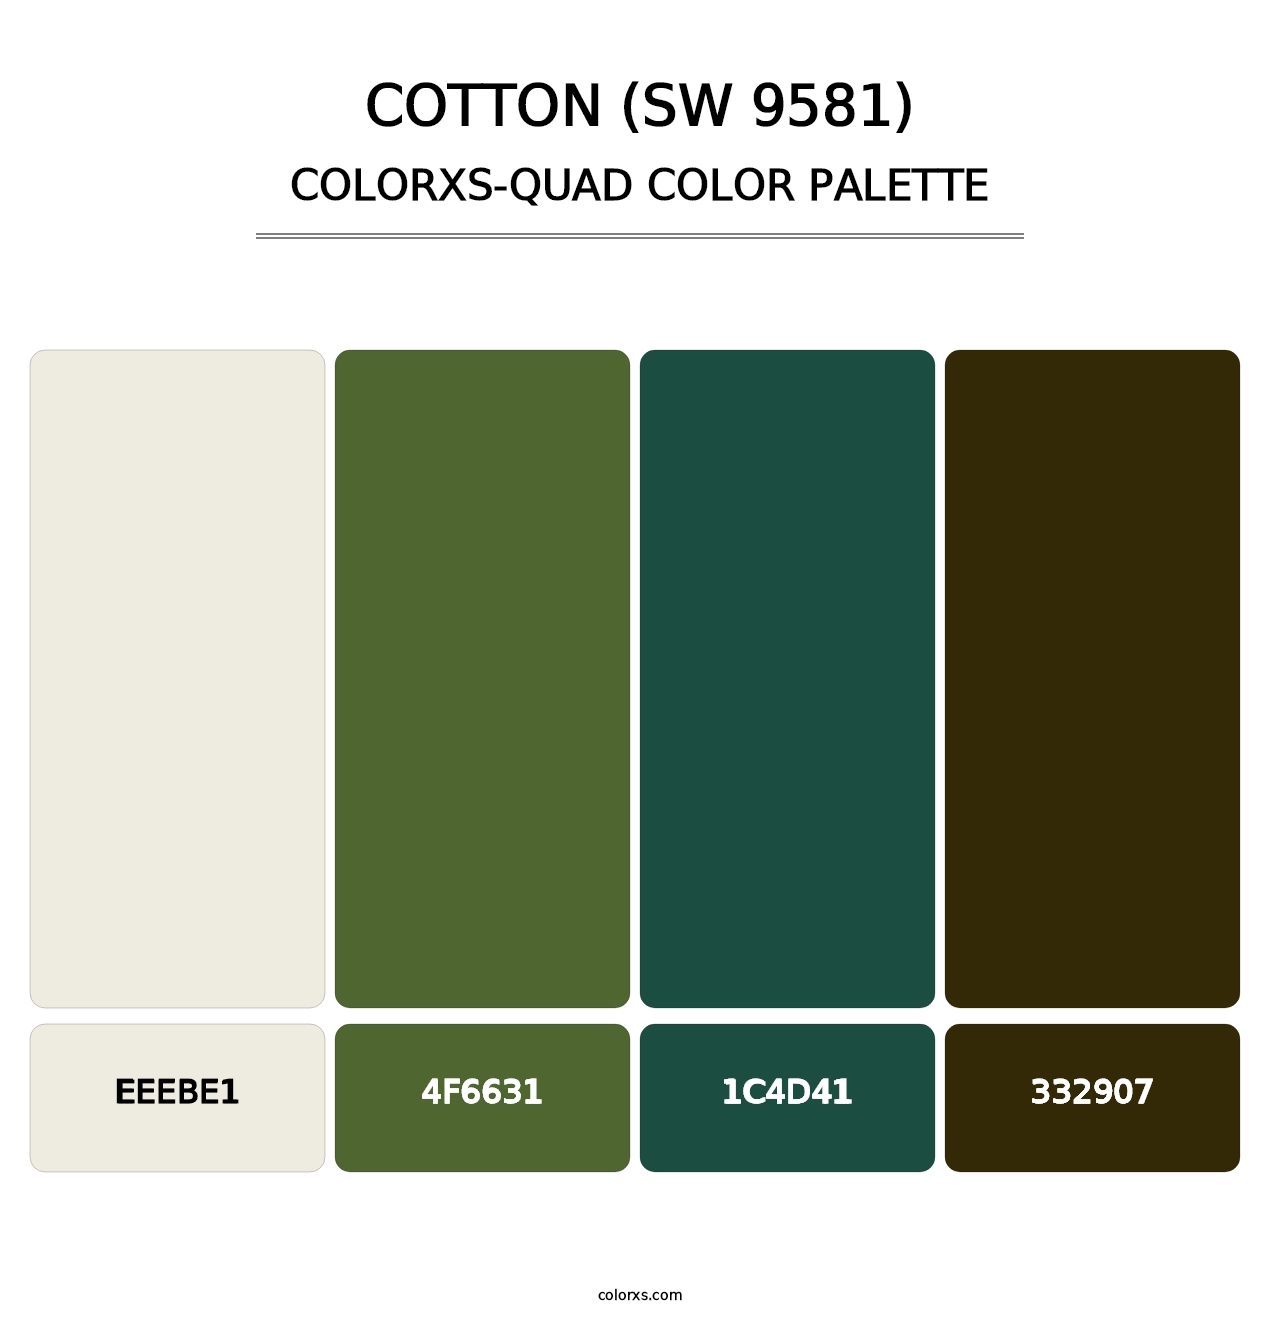 Cotton (SW 9581) - Colorxs Quad Palette